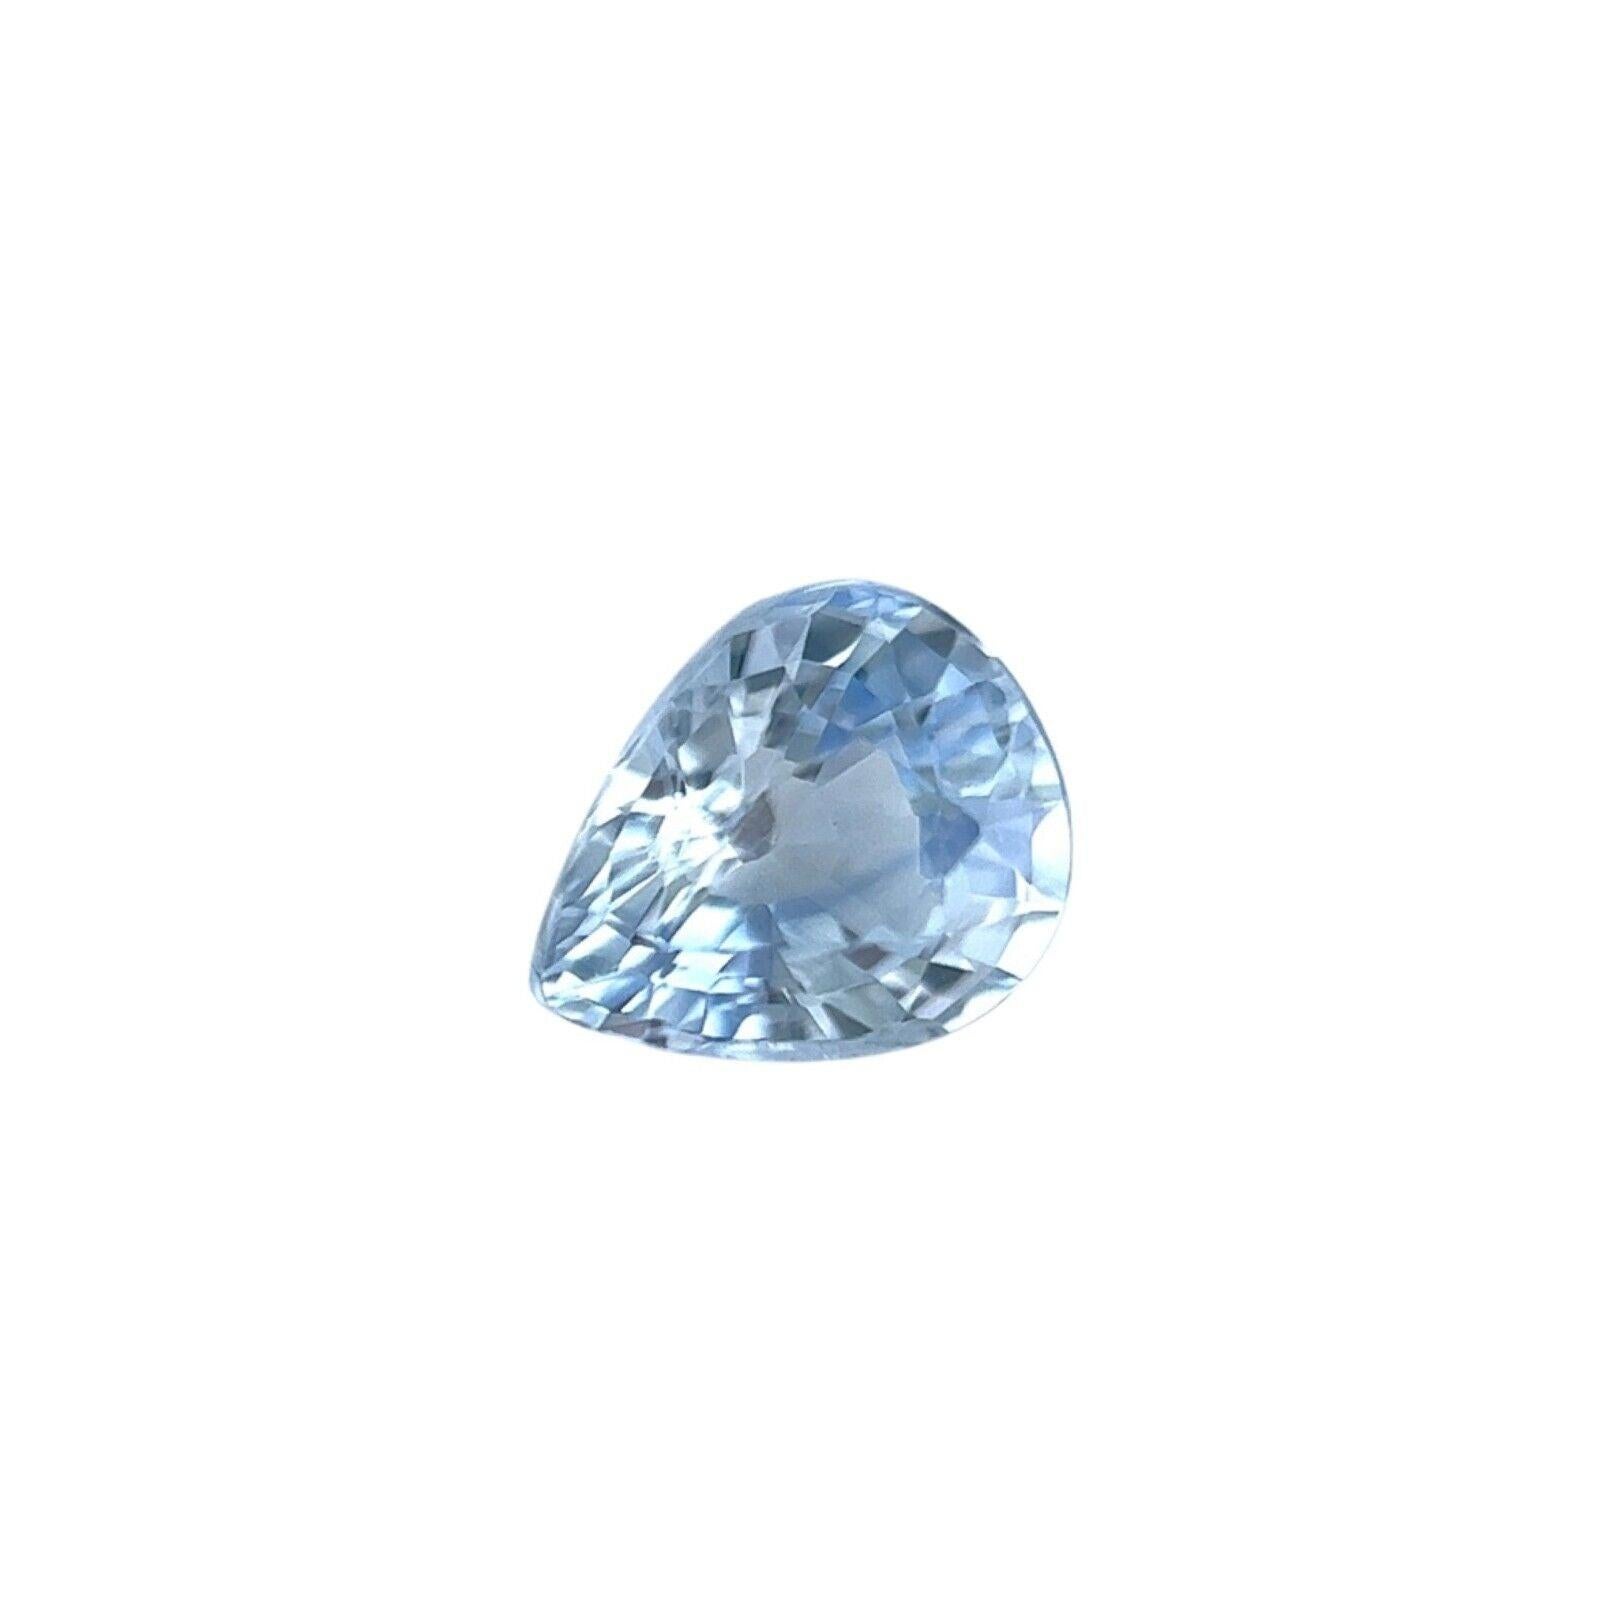 Naturel 1.14ct Bleu clair Ceylan Fine Saphir Pear Cut 7x5.7mm Loose Gem VS

Saphir bleu clair naturel de Ceylan.
1,14 carat avec une belle couleur bleu clair et une excellente coupe en poire et un poli idéal pour montrer une grande brillance et la